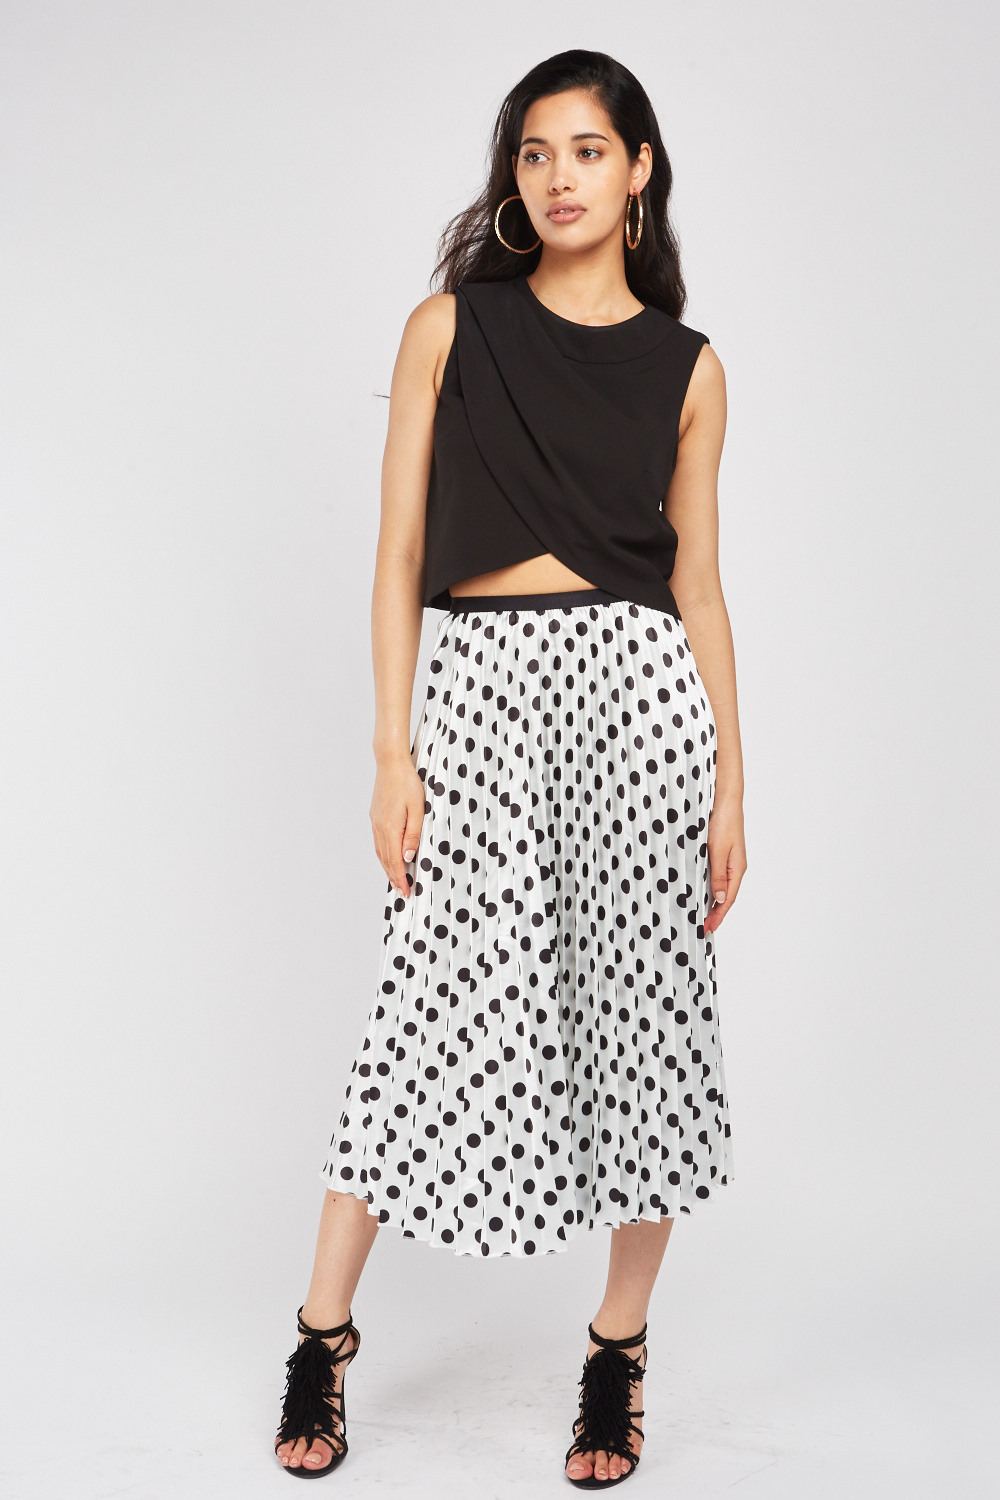 Polka Dot Pleated Midi Skirt - Just $6